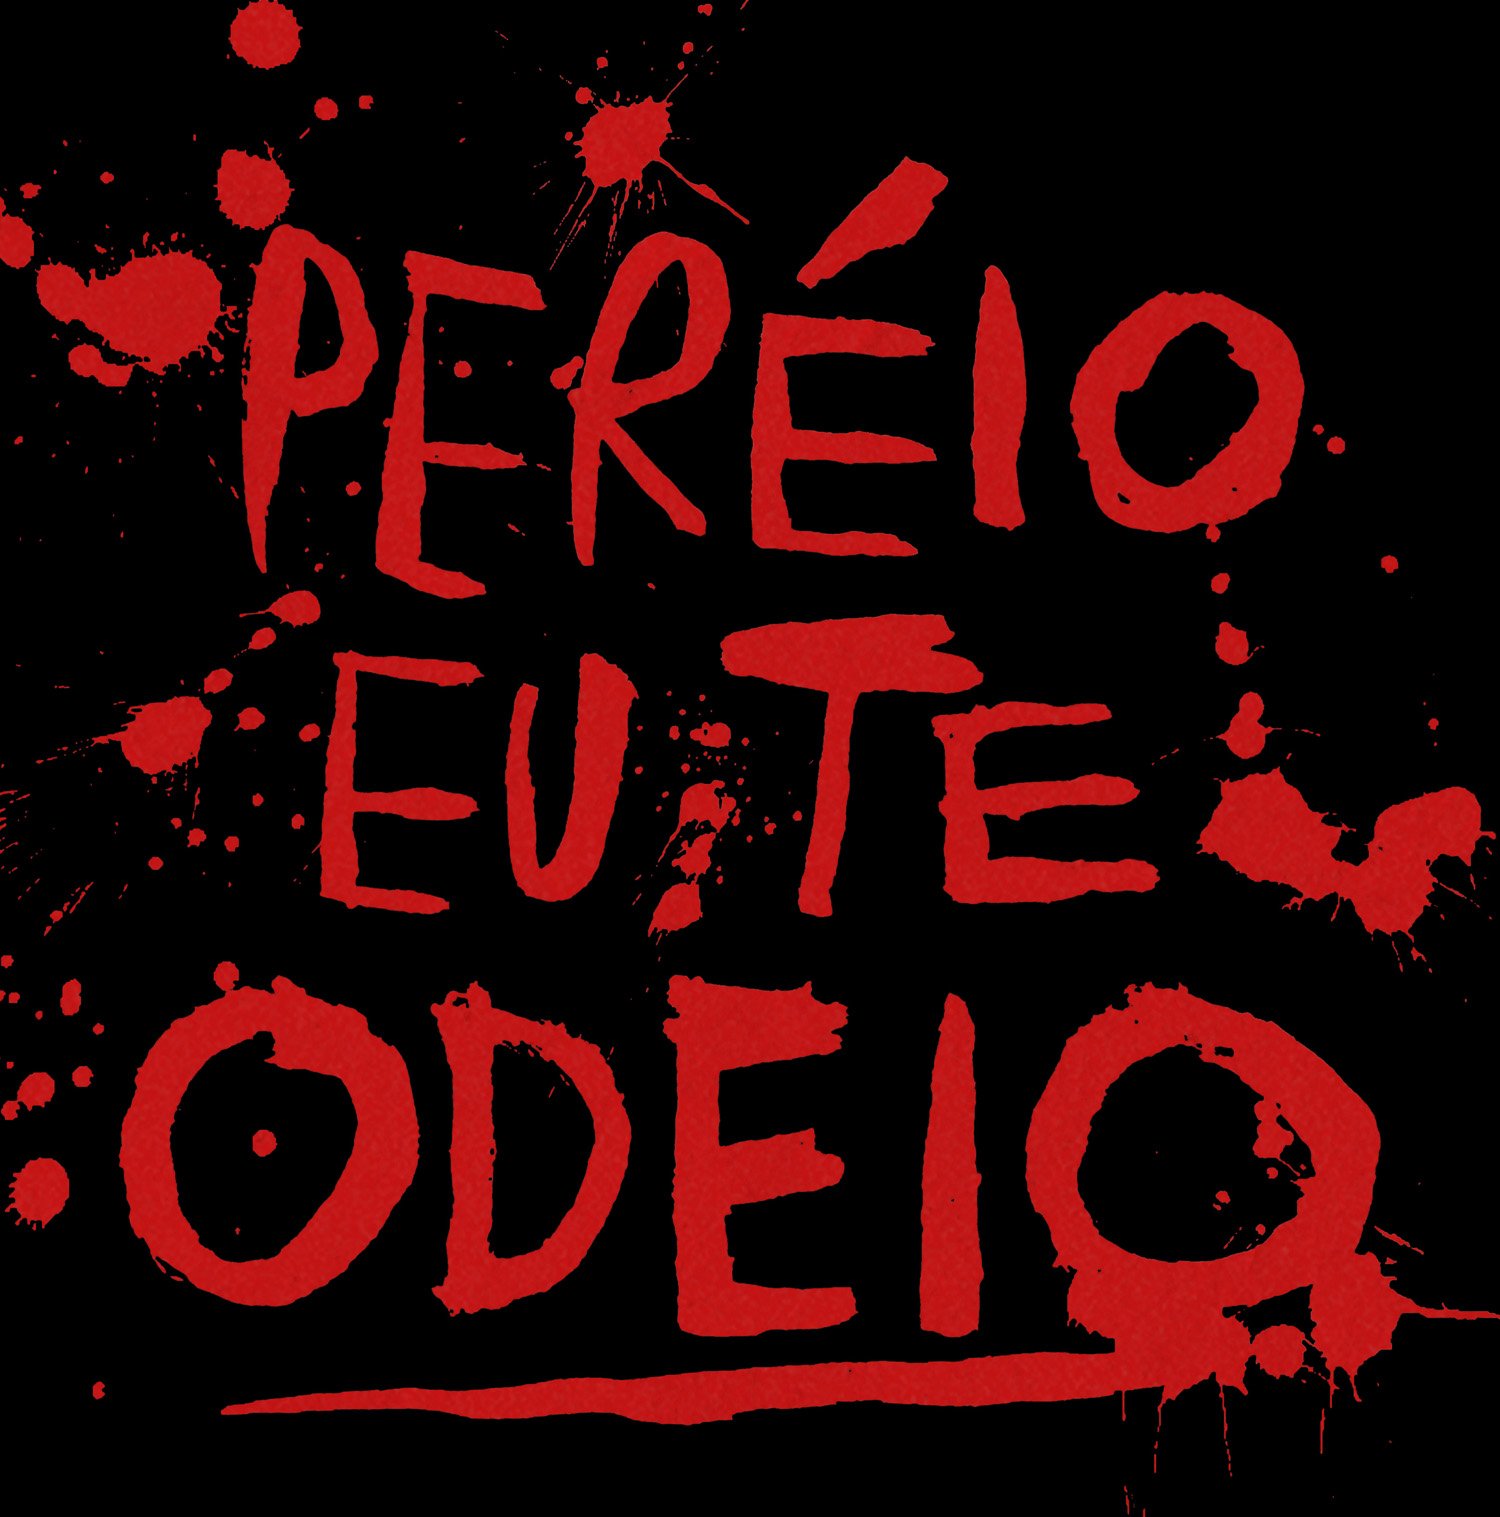 Peréio, Eu Te Odeio - Festival do Rio